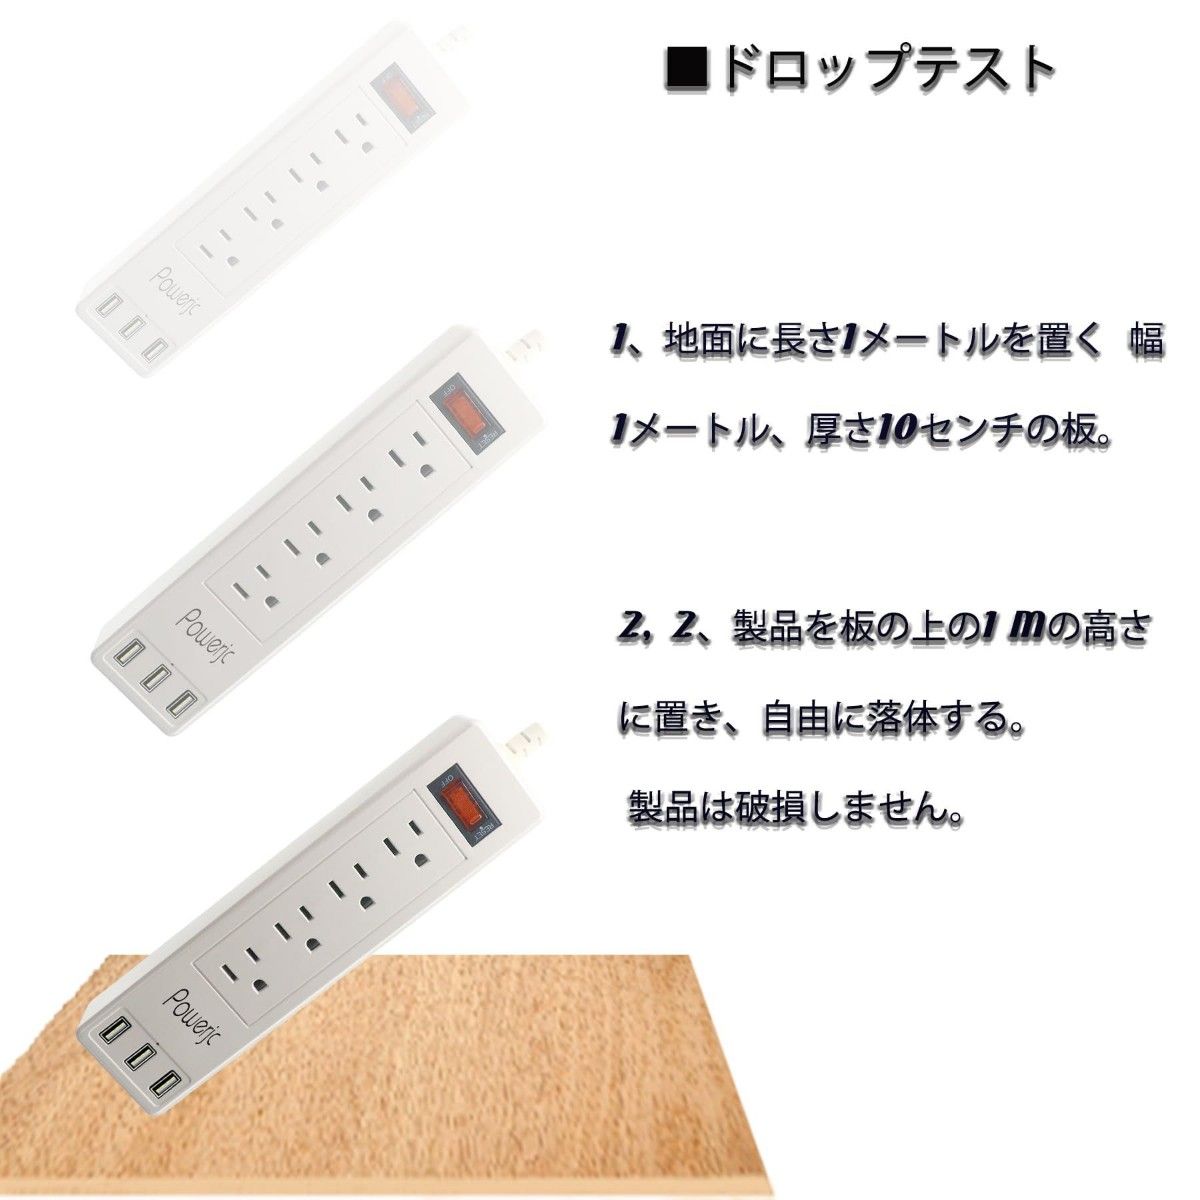 USB 電源タップ コンセント 4個AC充電口 3個USBポート 電源コード OAタップ 一括スイッチ付き 1.5m 延長コード 